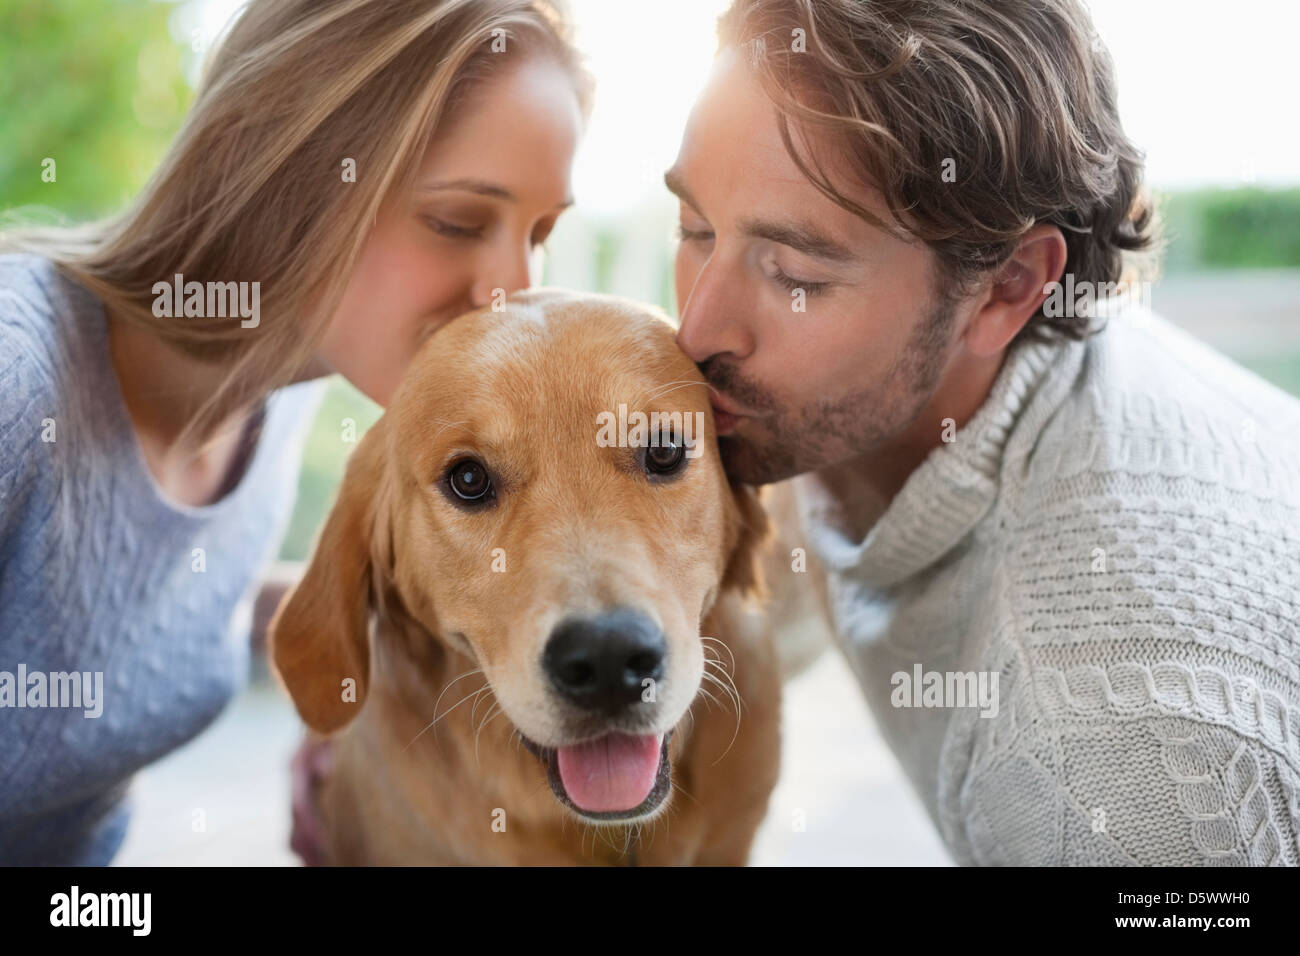 Couple kissing dog indoors Stock Photo